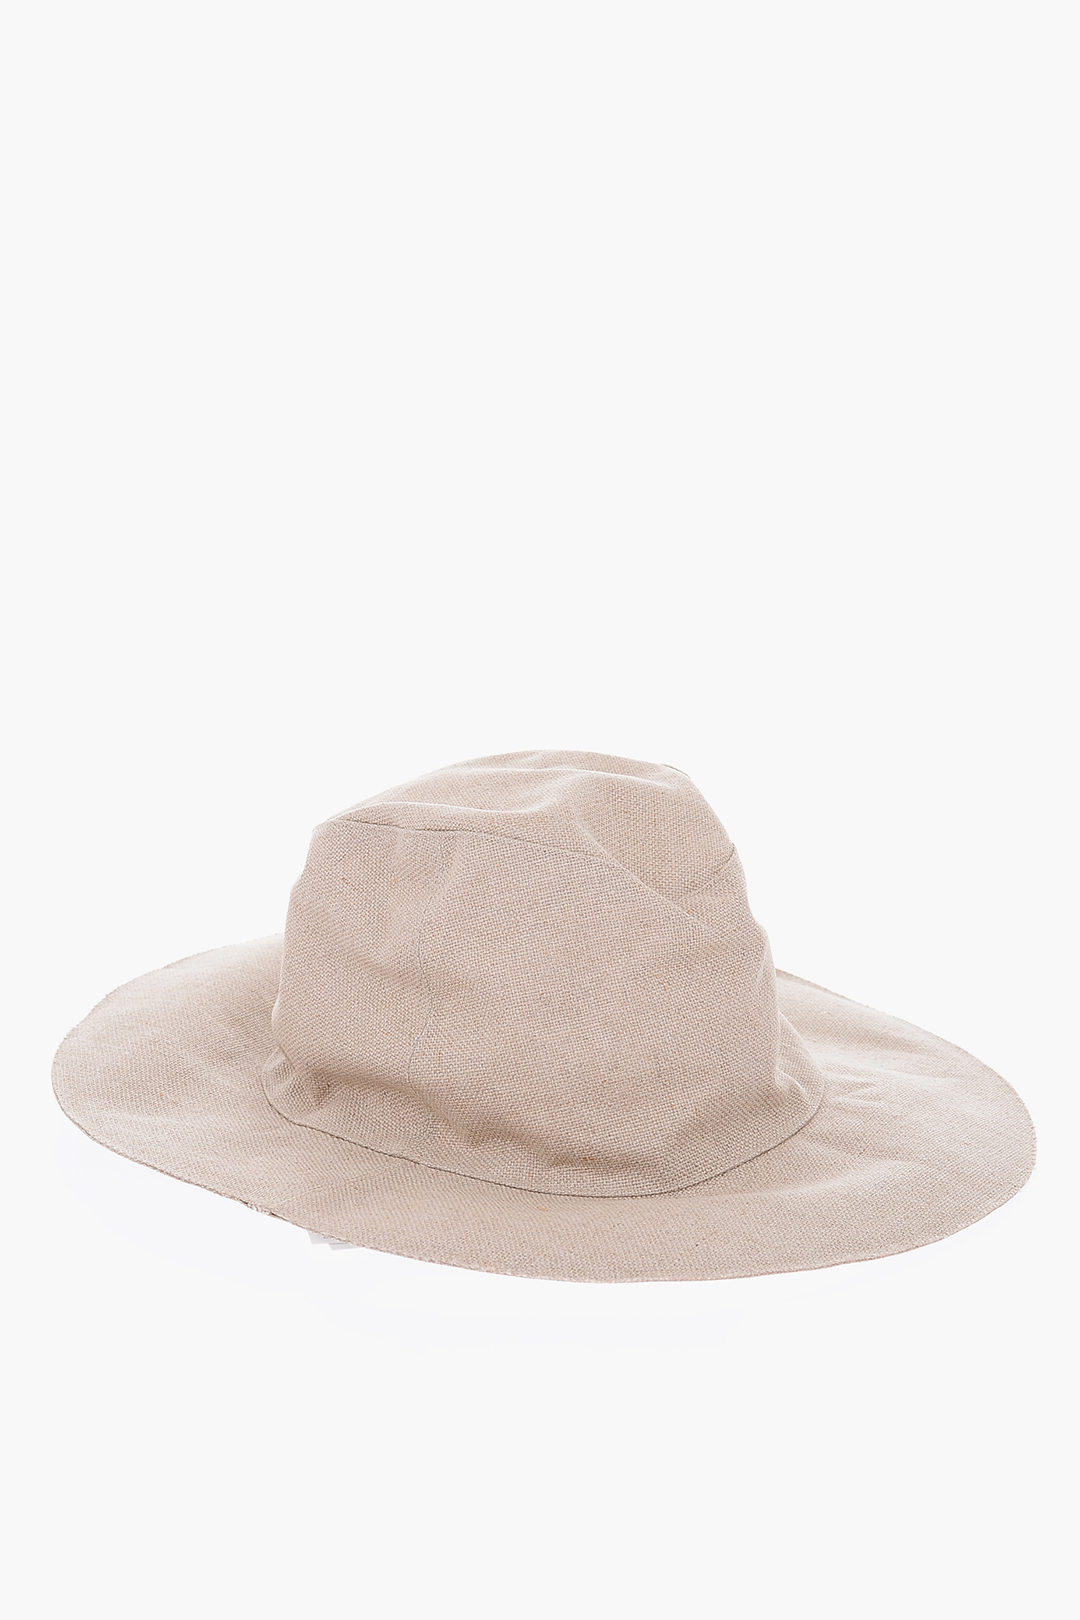 JUN TAKAHASHI KIJIMA TAKAYUKI Linen Panama Hat